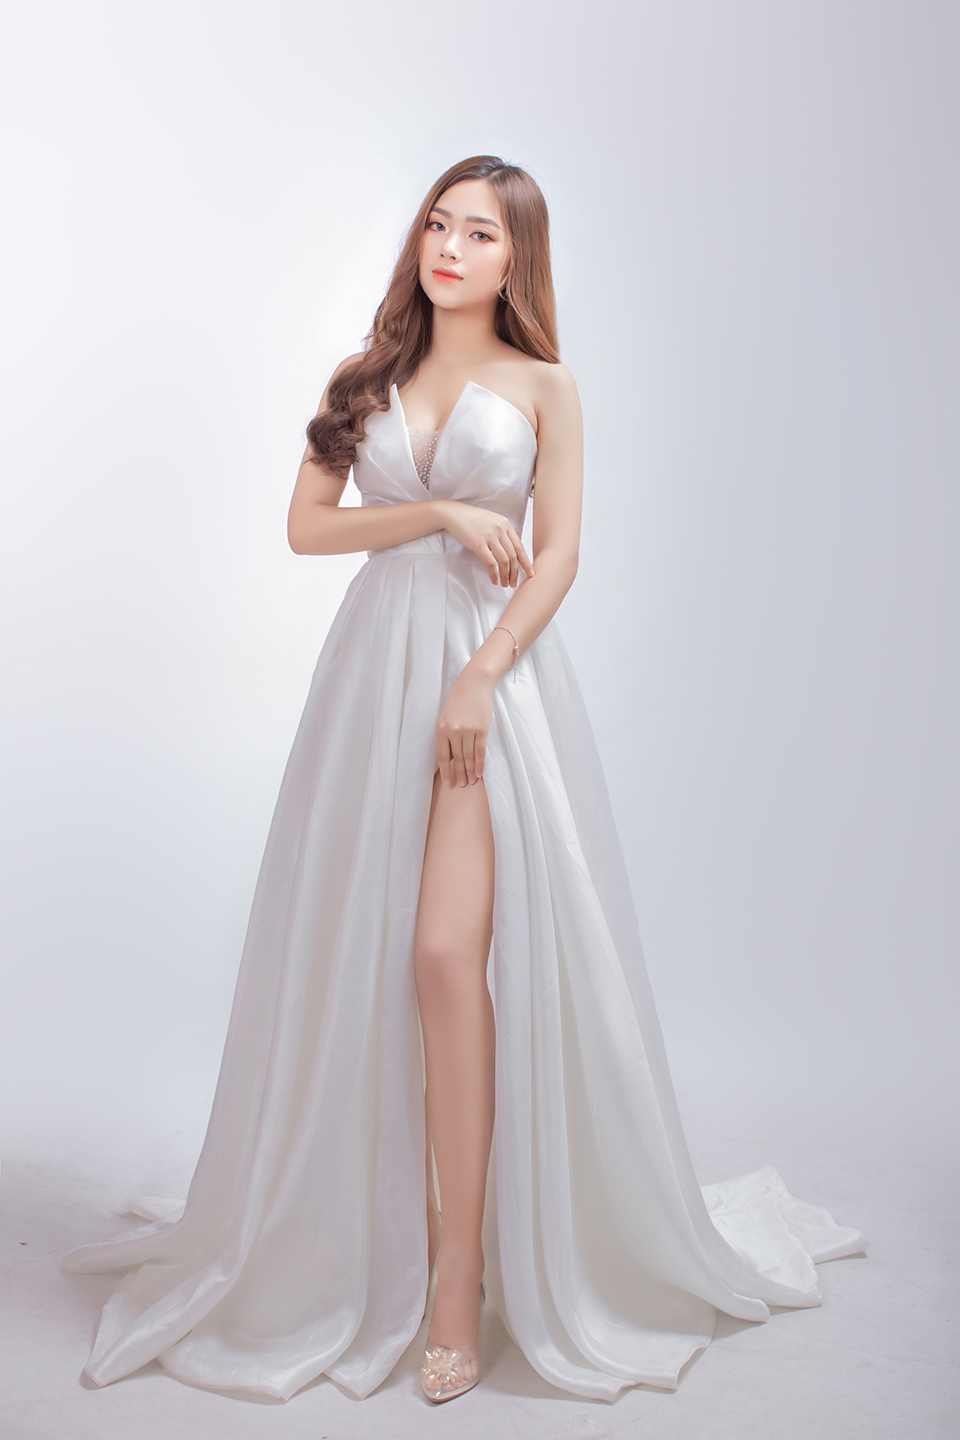 Dược Thanh đang gây chú ý tại&nbsp;“Hoa hậu Hoàn vũ Việt Nam 2021”&nbsp;